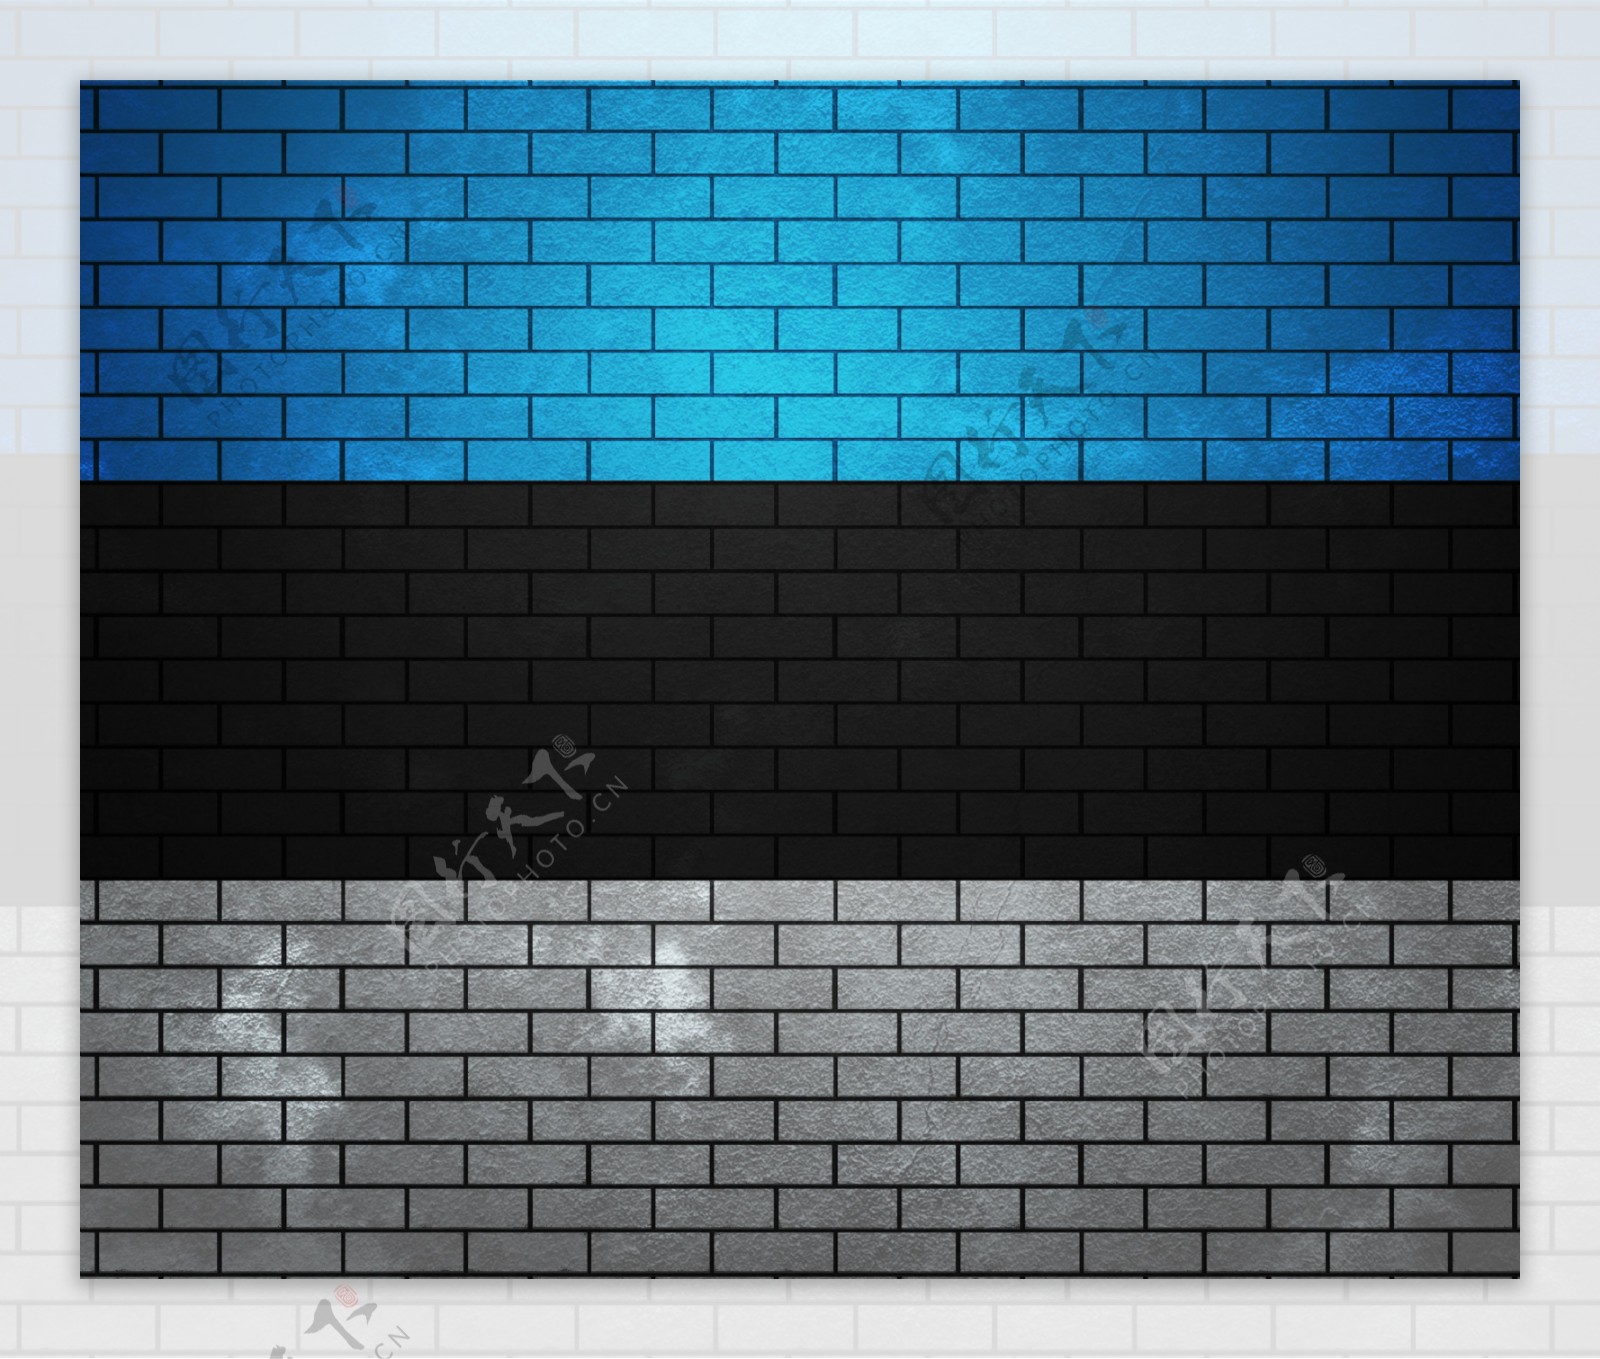 爱沙尼亚在砖墙上的旗帜